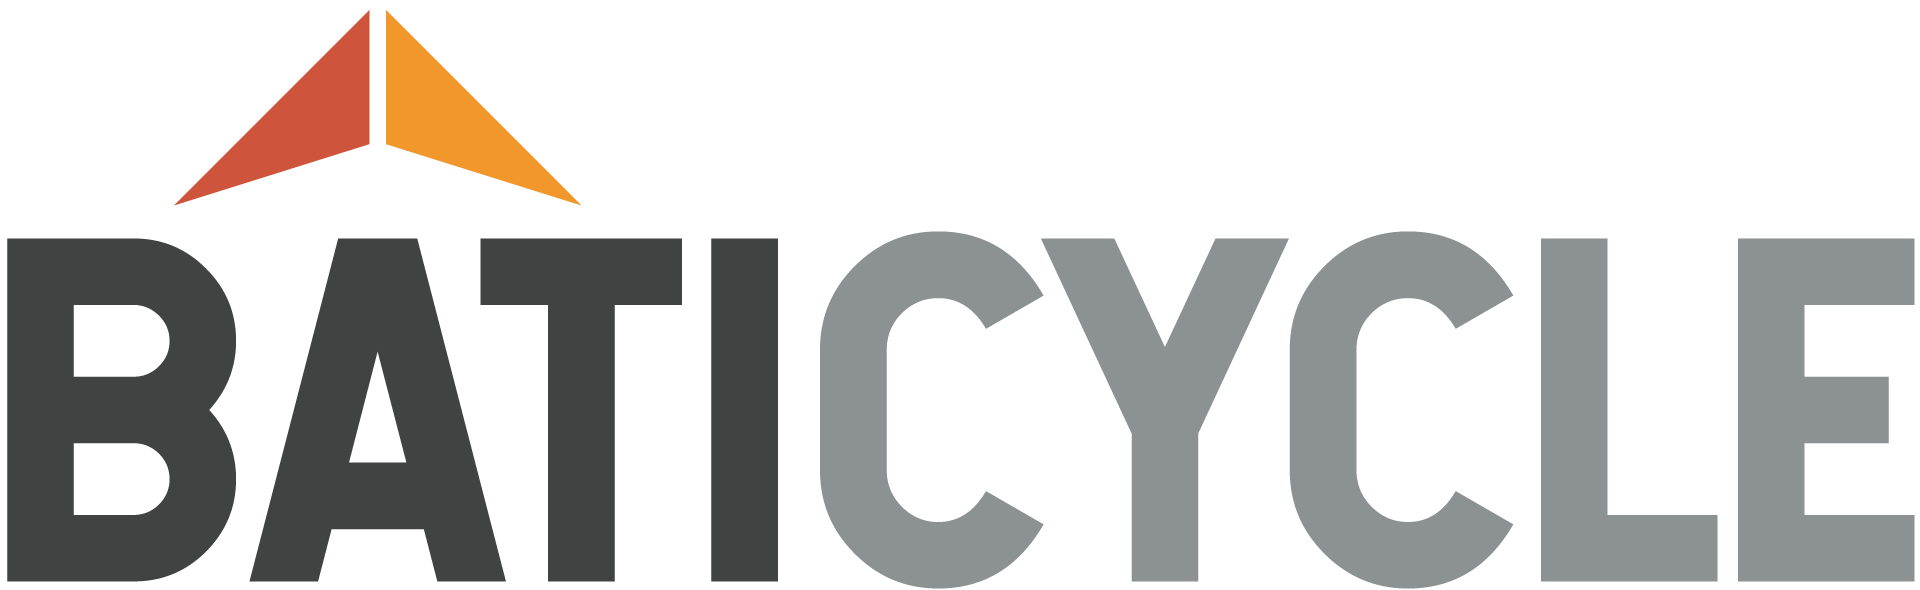 logo-baticycle-hd